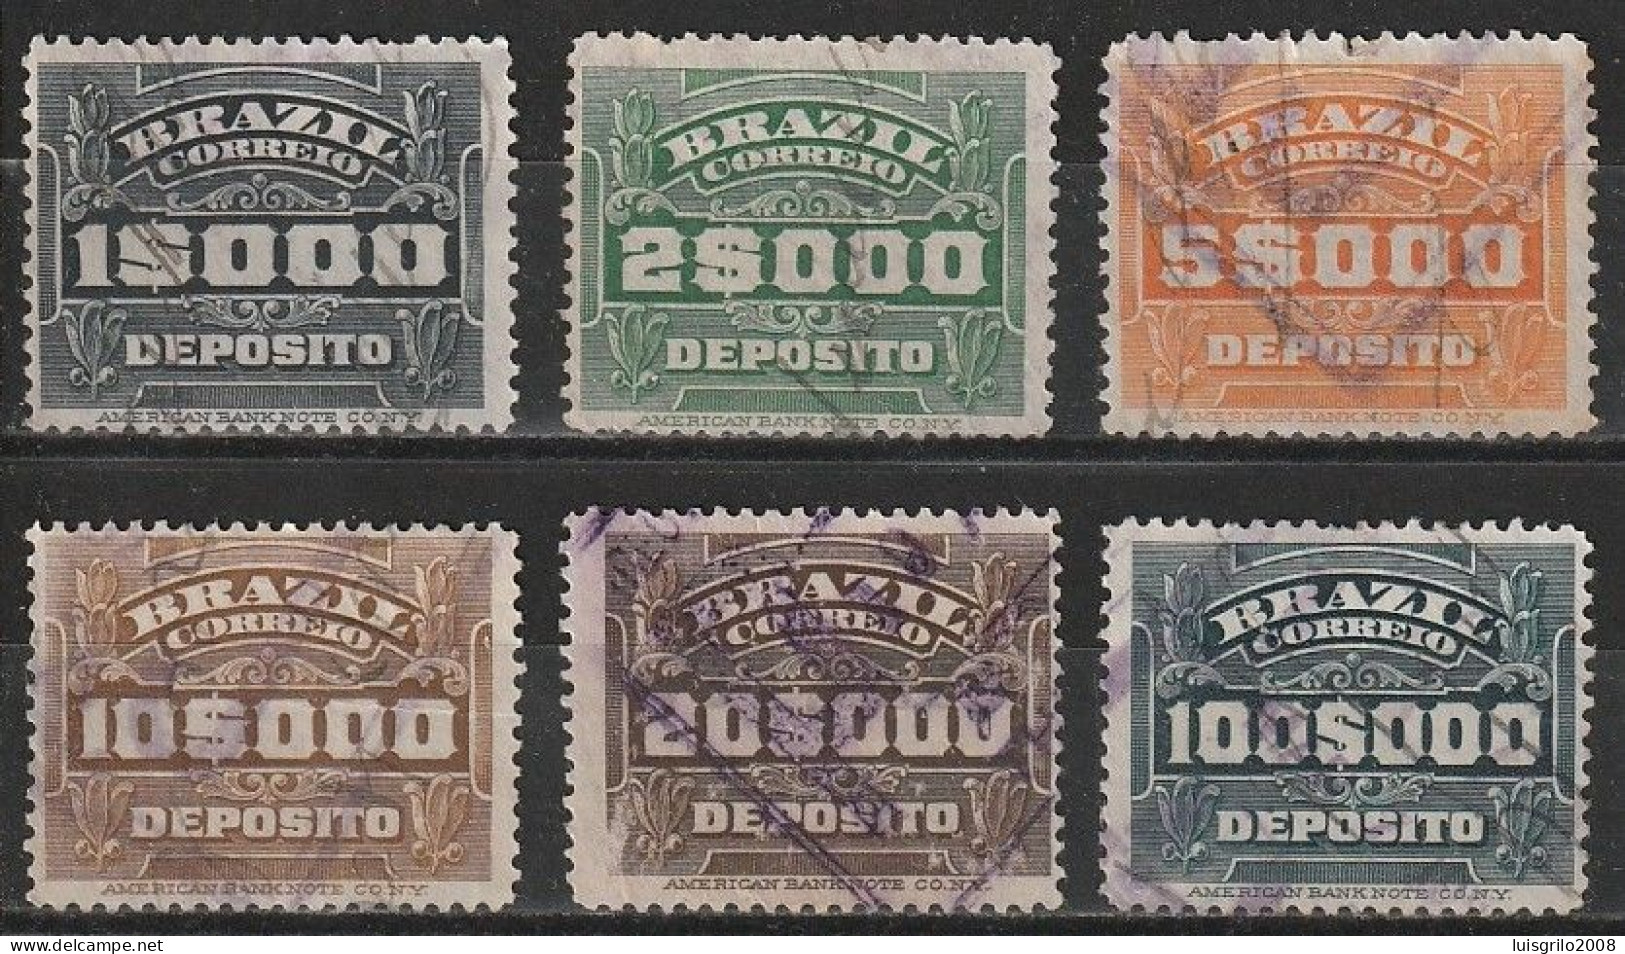 Revenue/ Fiscaux, Brazil 1920 - Depósito, Receita Fiscal -|- 1$000, 2$000, 5$000, 10$000, 20$000, 100$000 - Postage Due